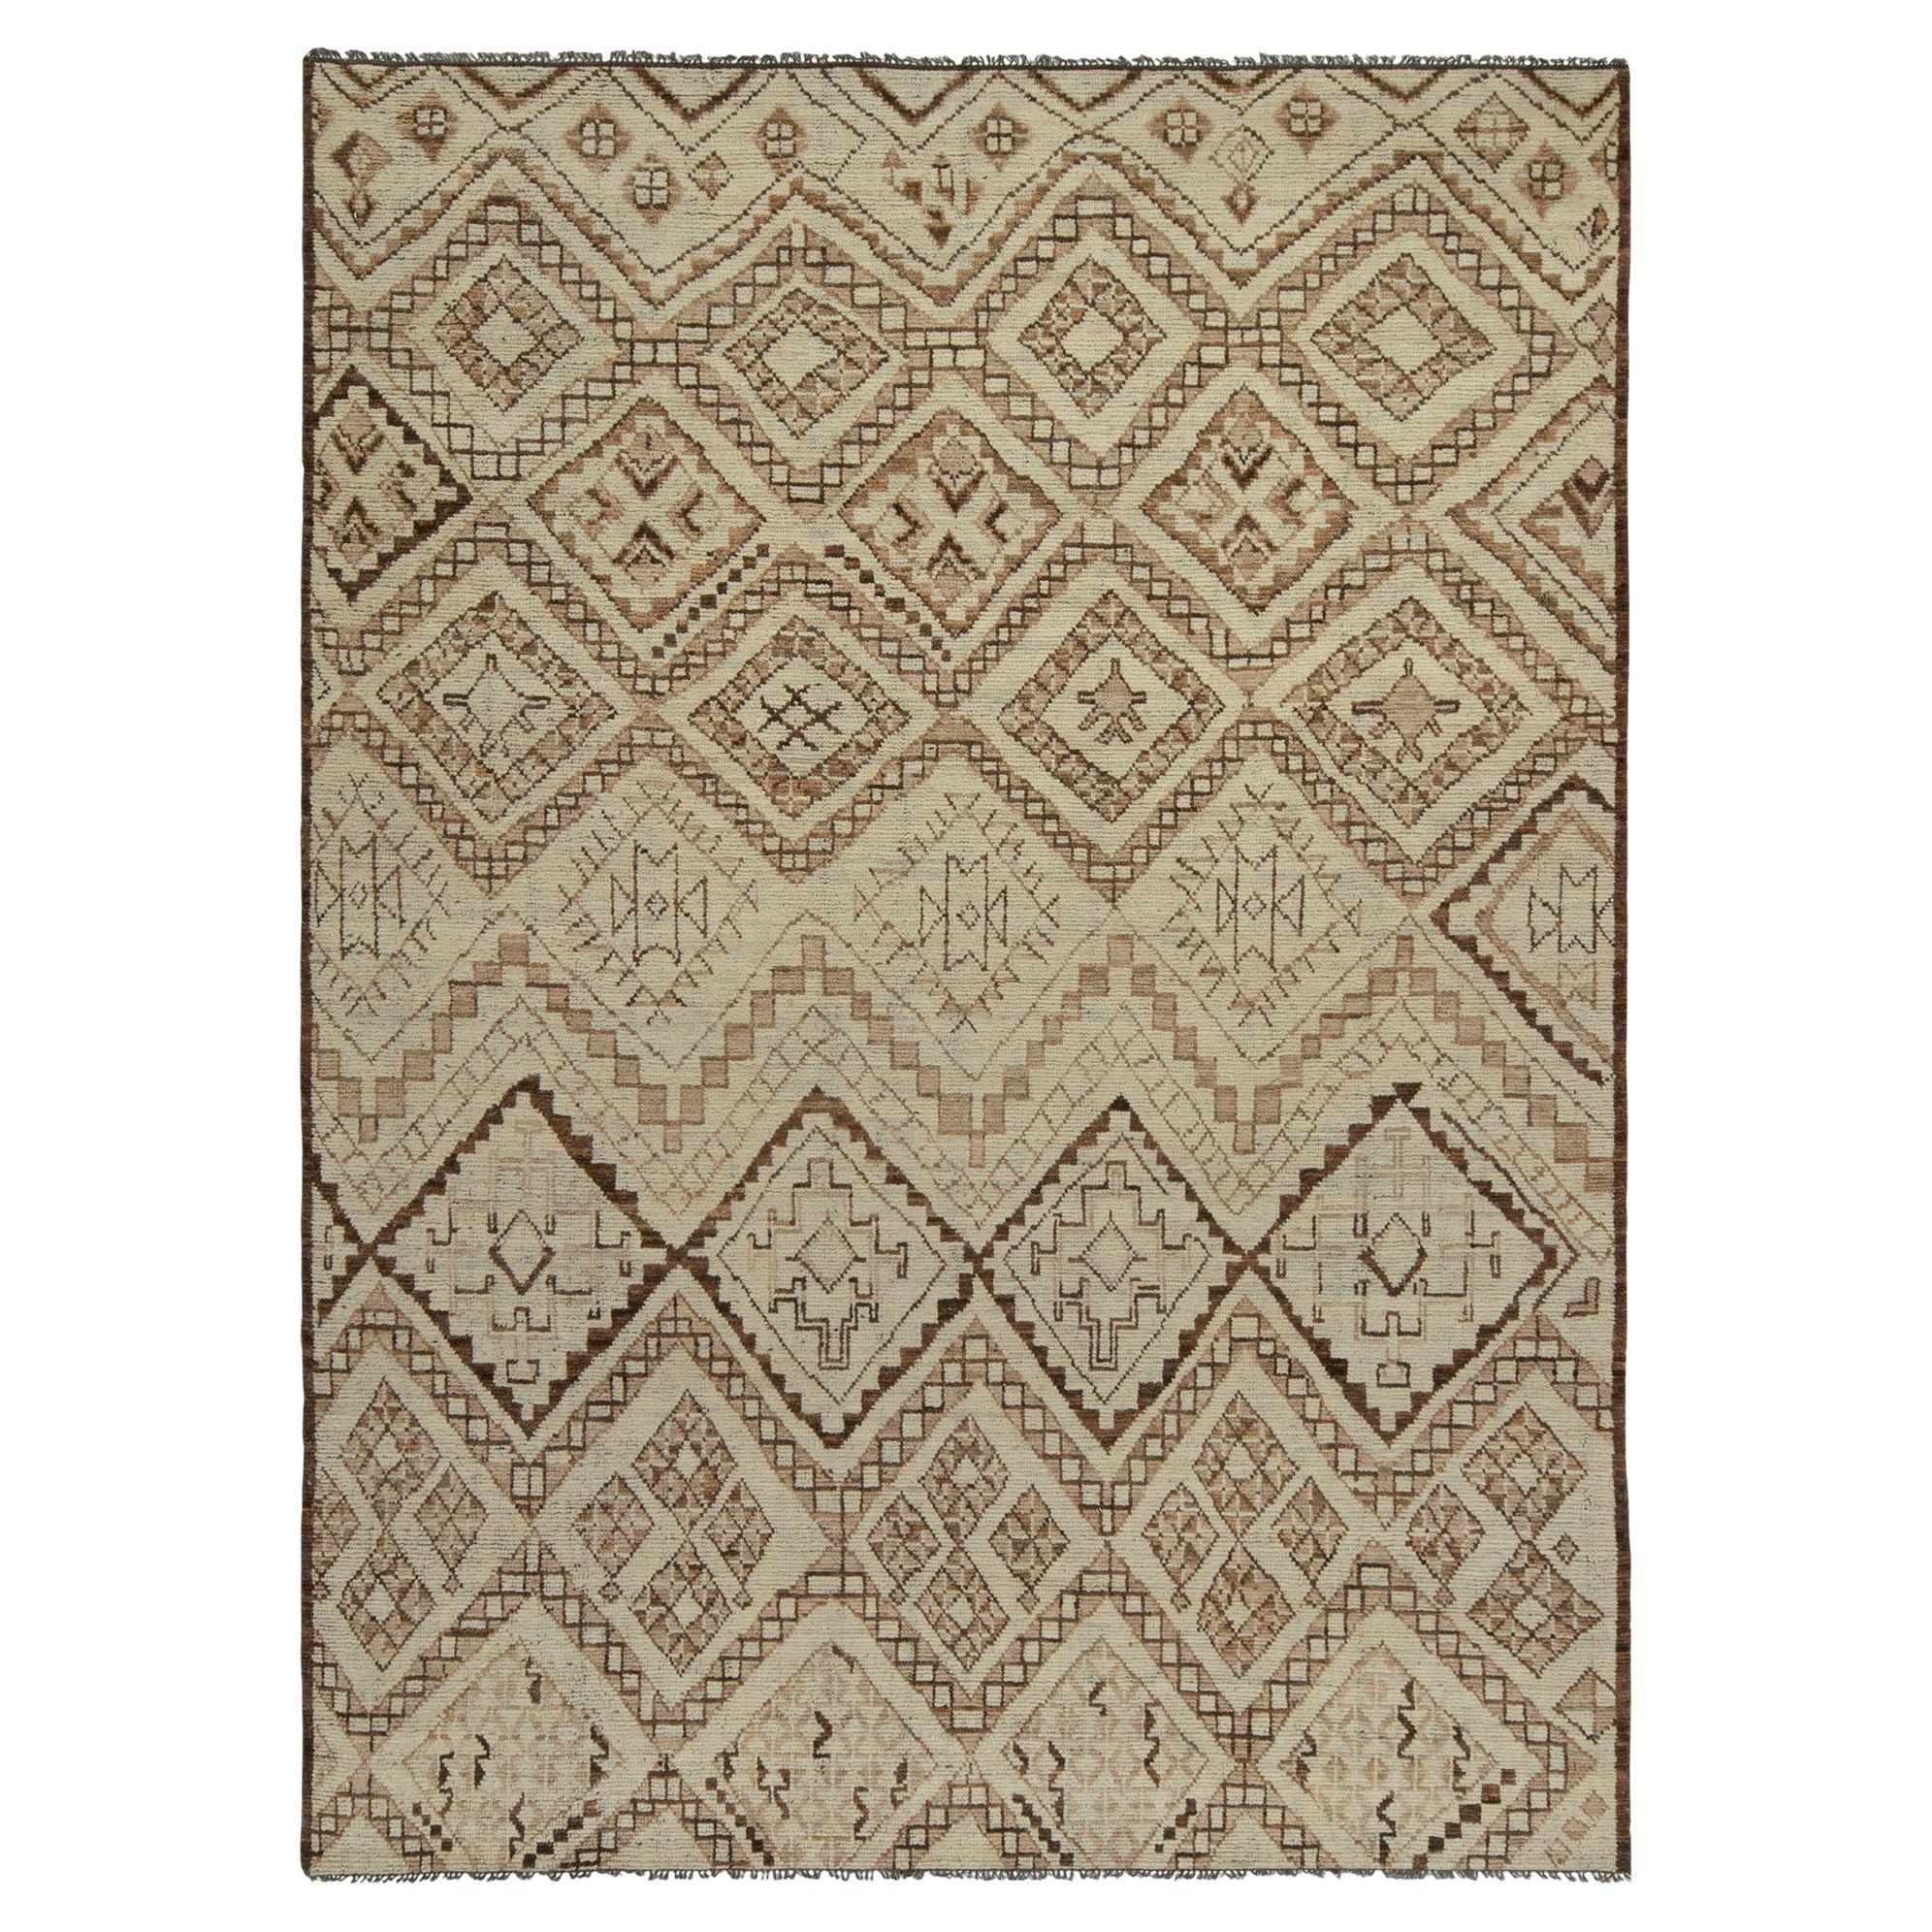 Teppich & Kilims im marokkanischen Stil mit geometrischen Stammesmustern in Beige-Braun